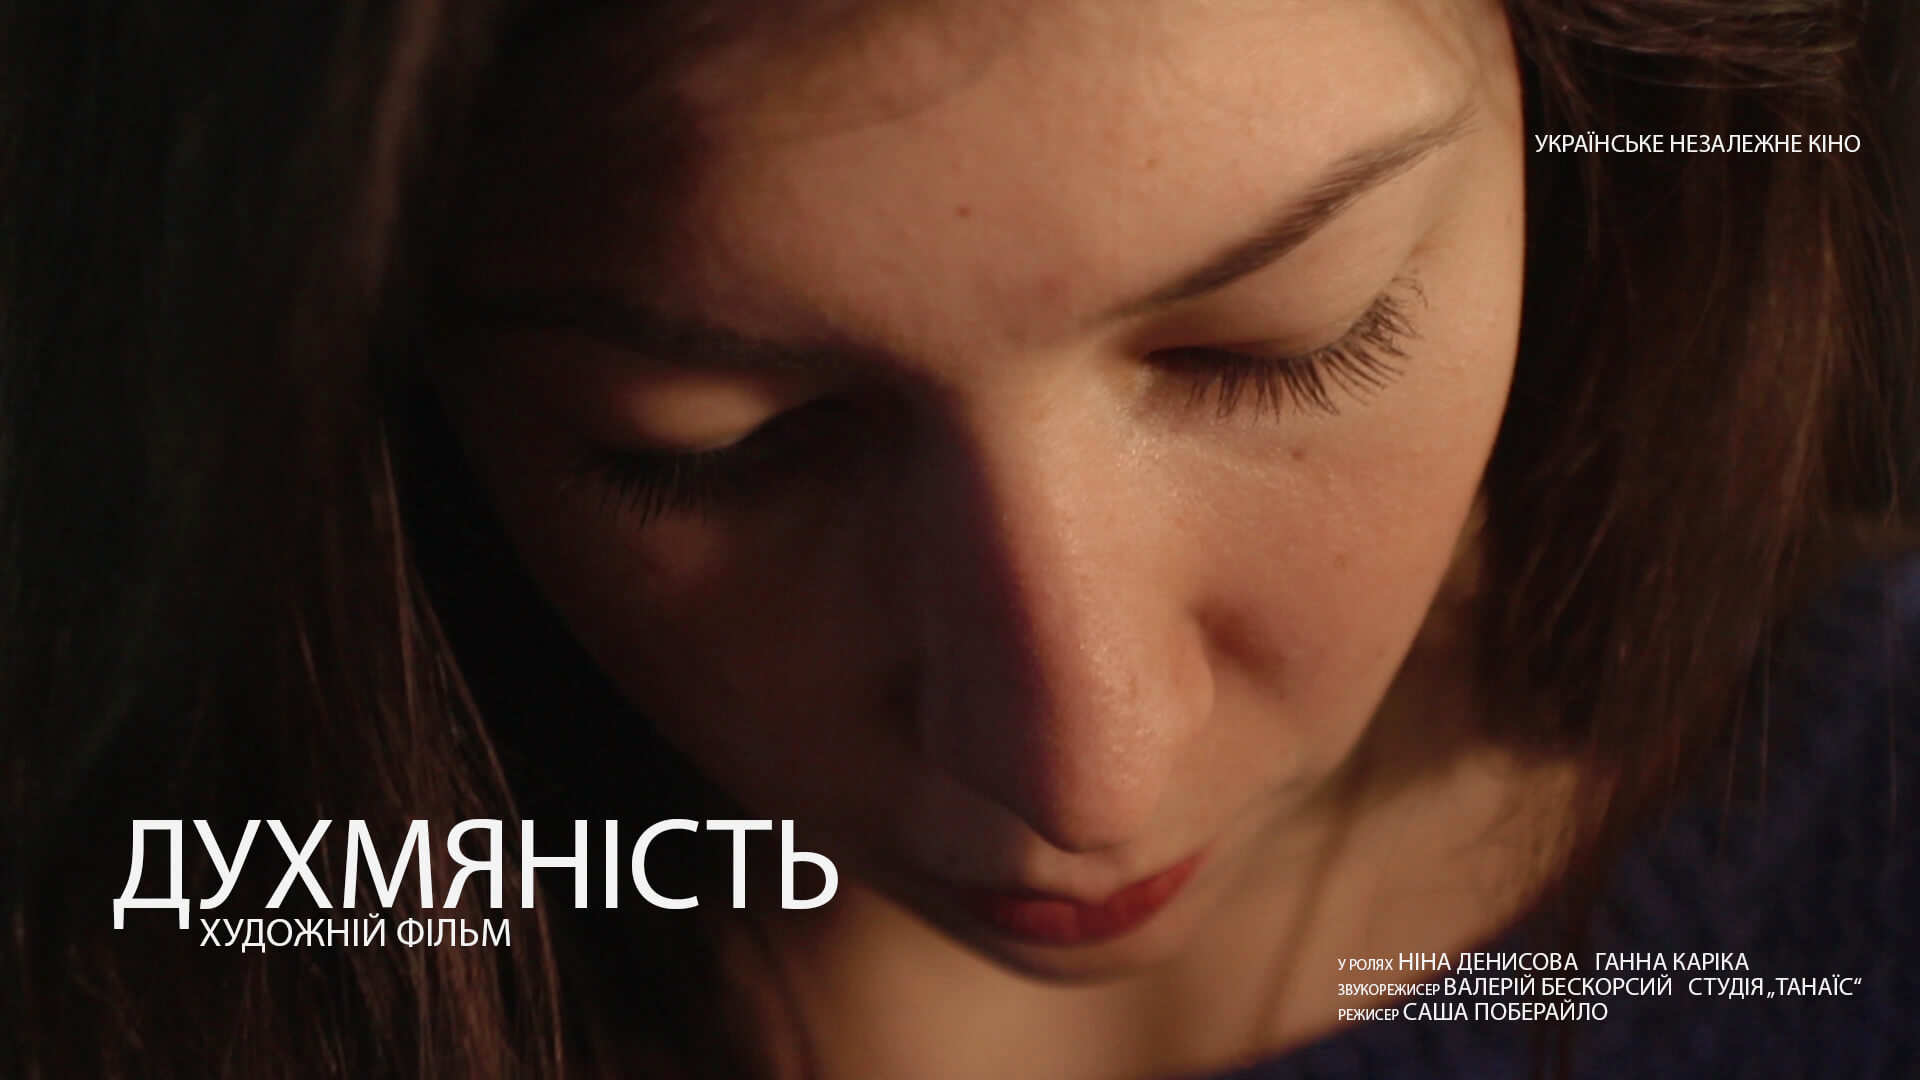 sweetness ukrainian short film - авторское кино, артхаус, украинское кино